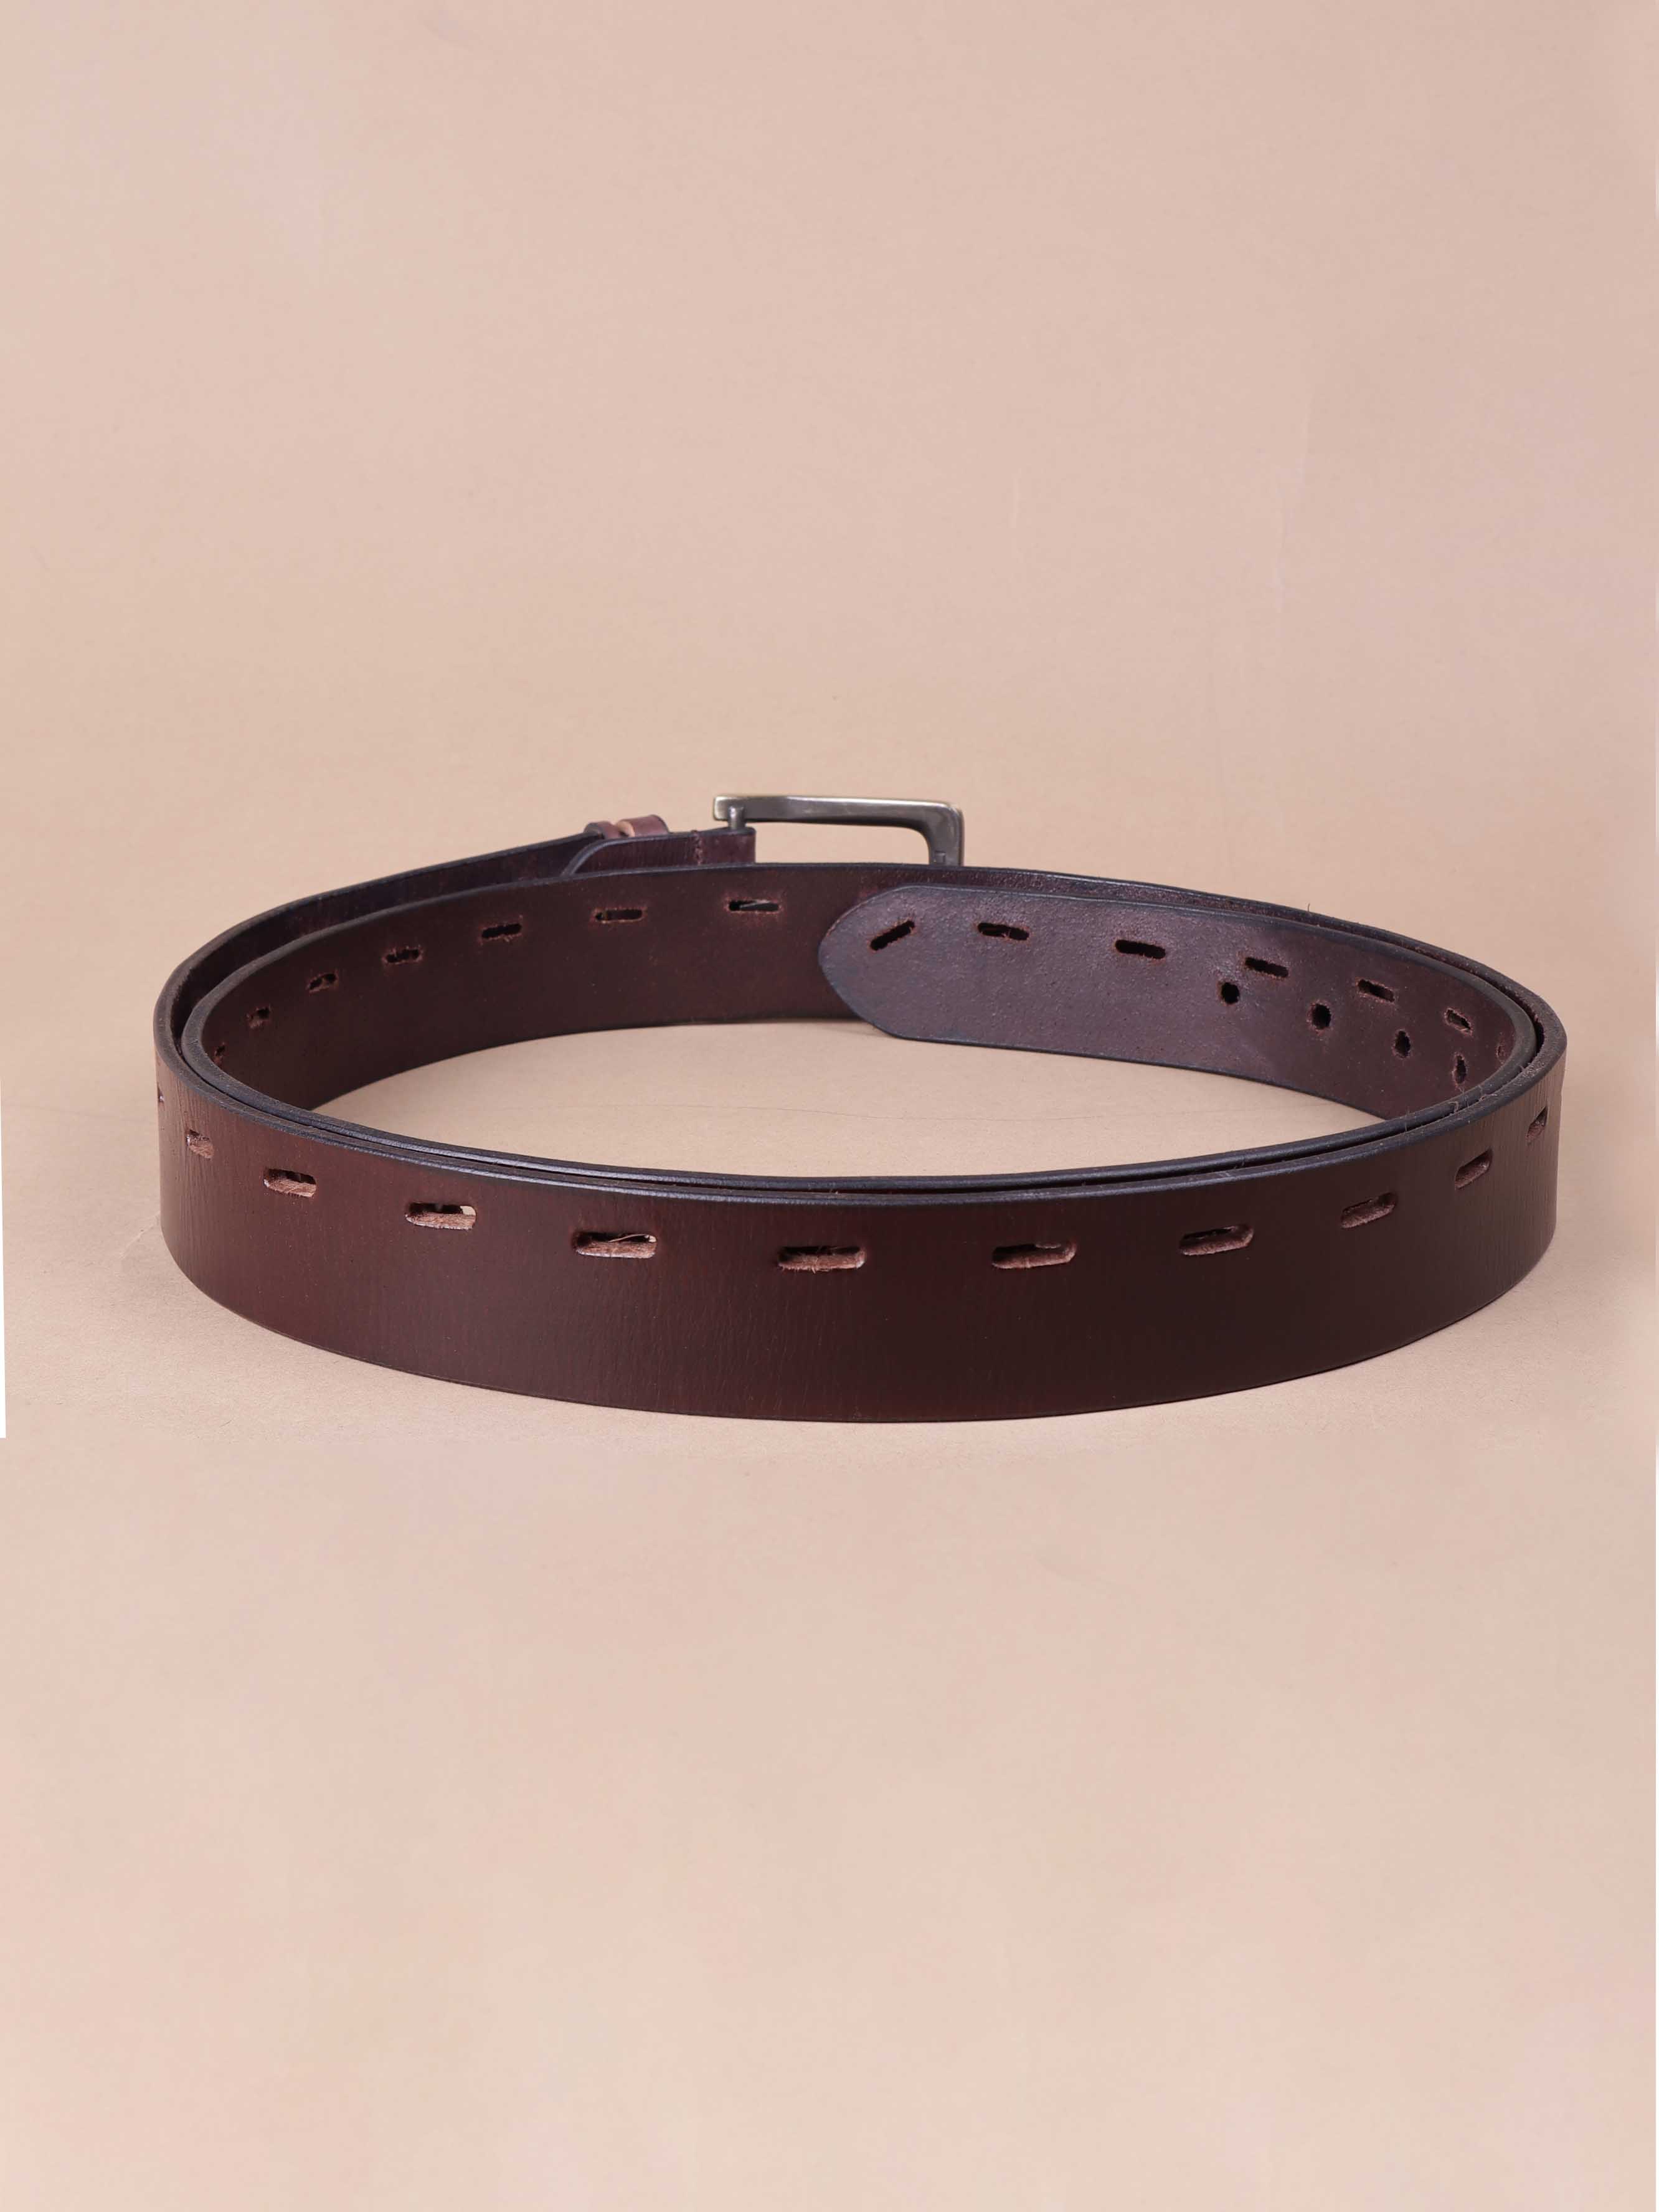 accessories/belts/JPBT1005/jpbt1005-3.jpg